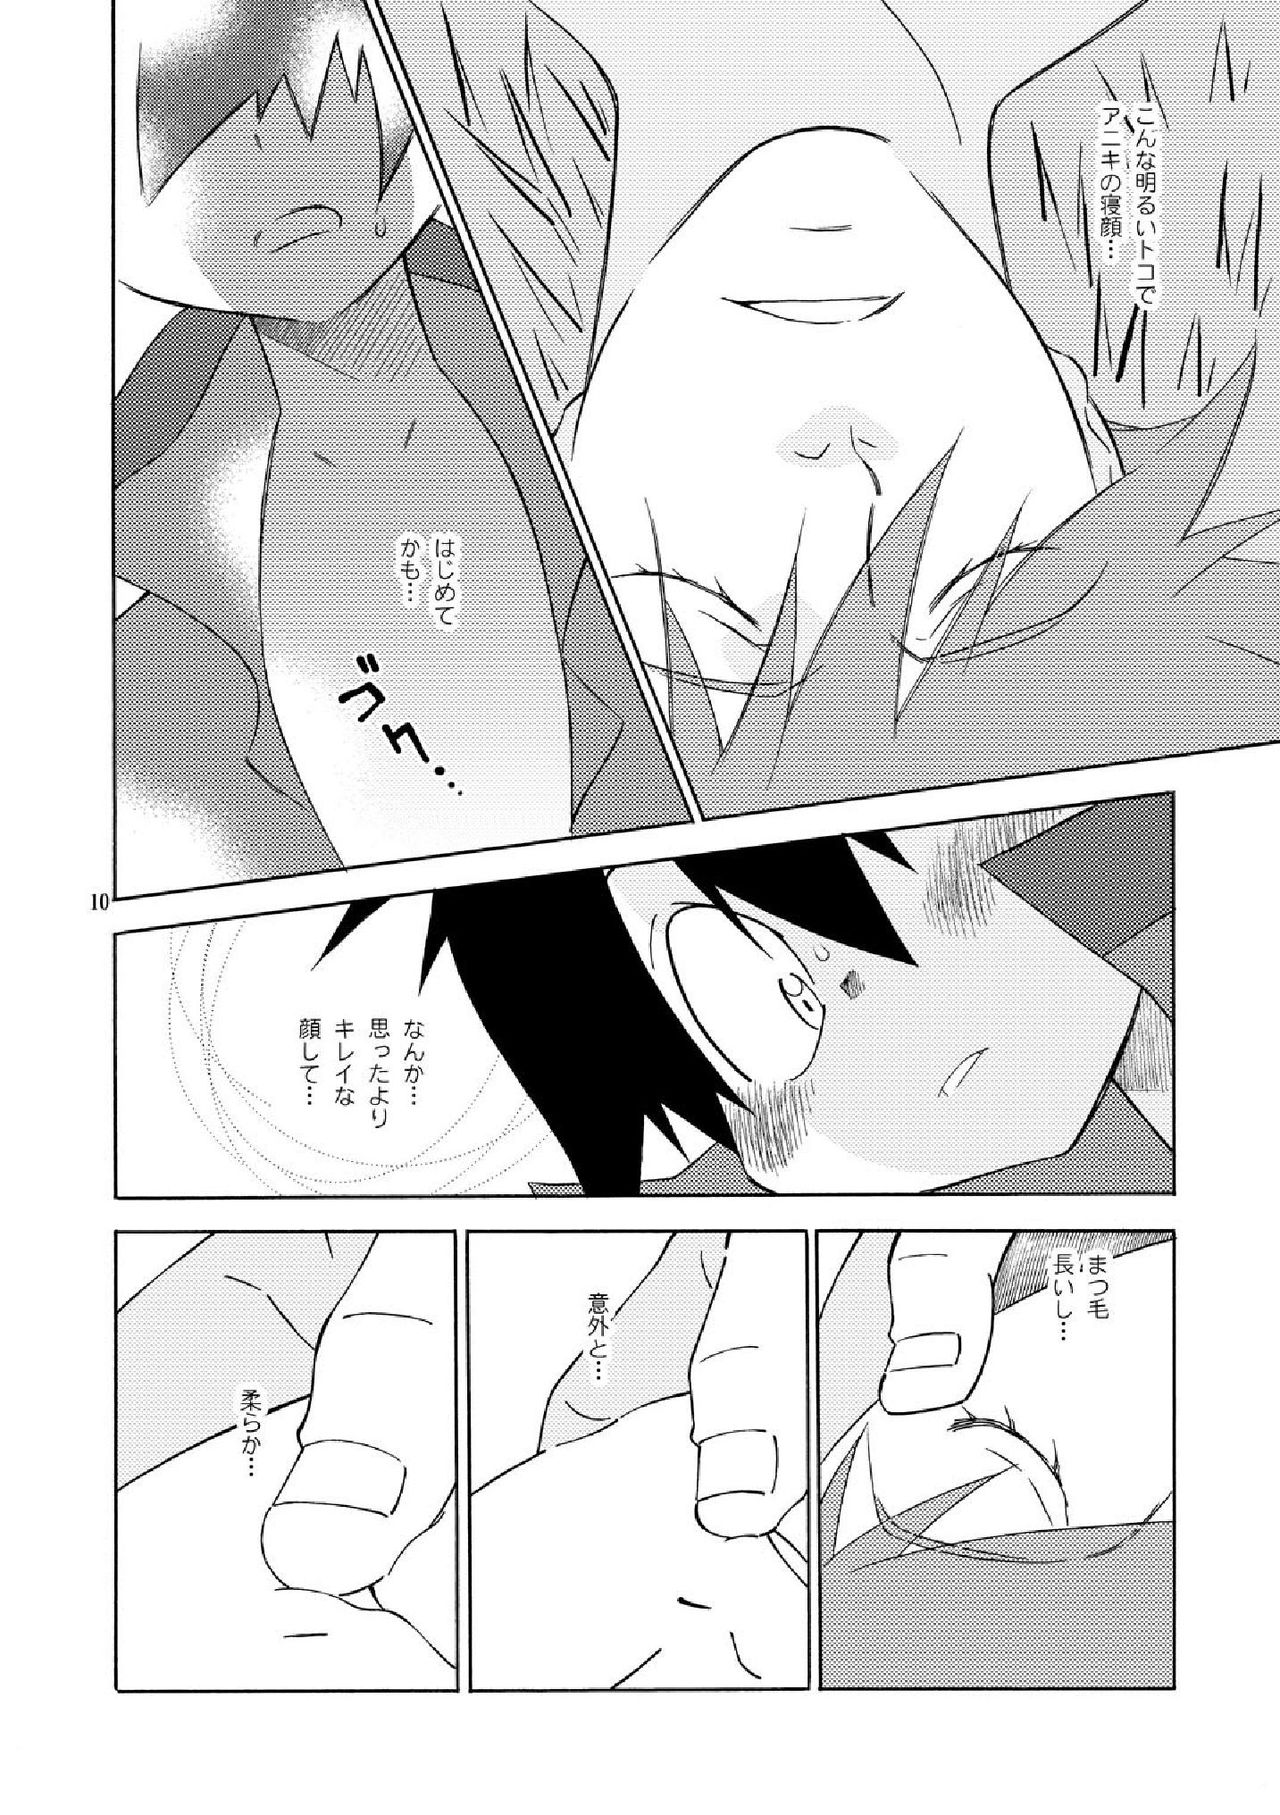 [musuBi (Shiomusubi)] Sweet morning (Tengen Toppa Gurren Lagann) page 10 full